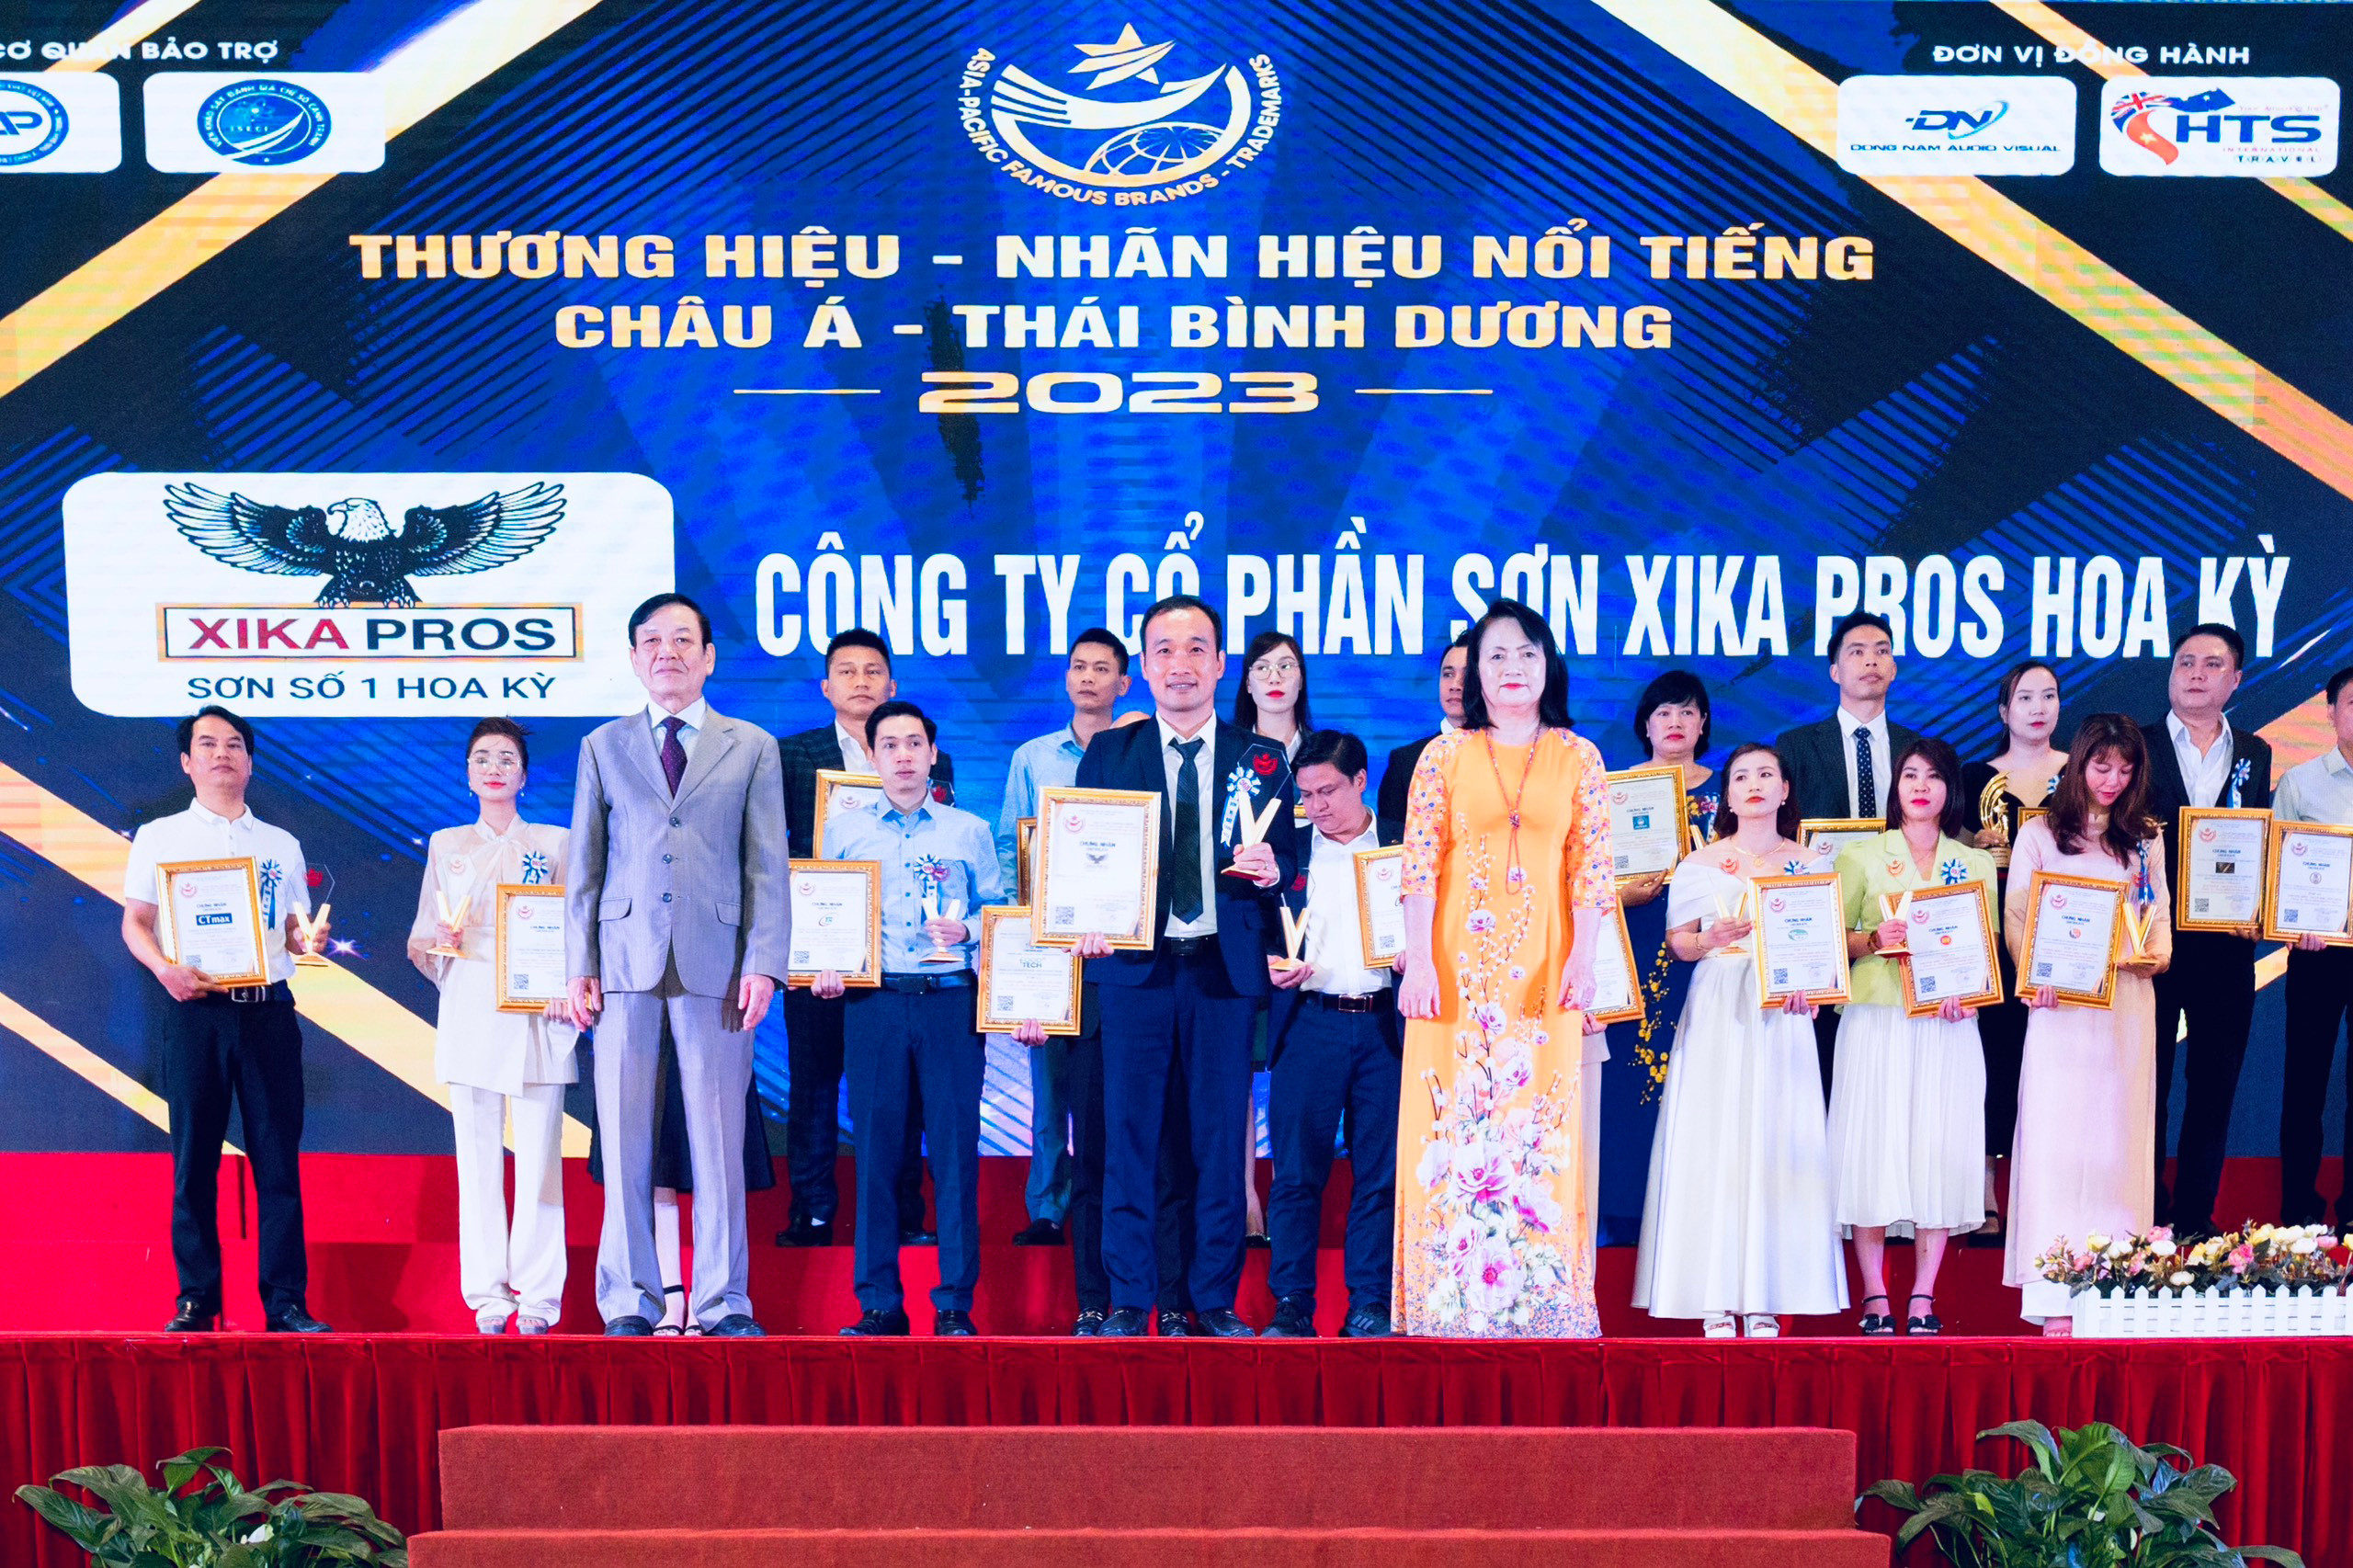 Sơn Xika Pros Hoa Kỳ - vinh dự đạt danh hiệu Top 10 thương hiệu, nhãn hiệu nổi tiếng Châu Á - Thái Bình Dương 2023 - 1